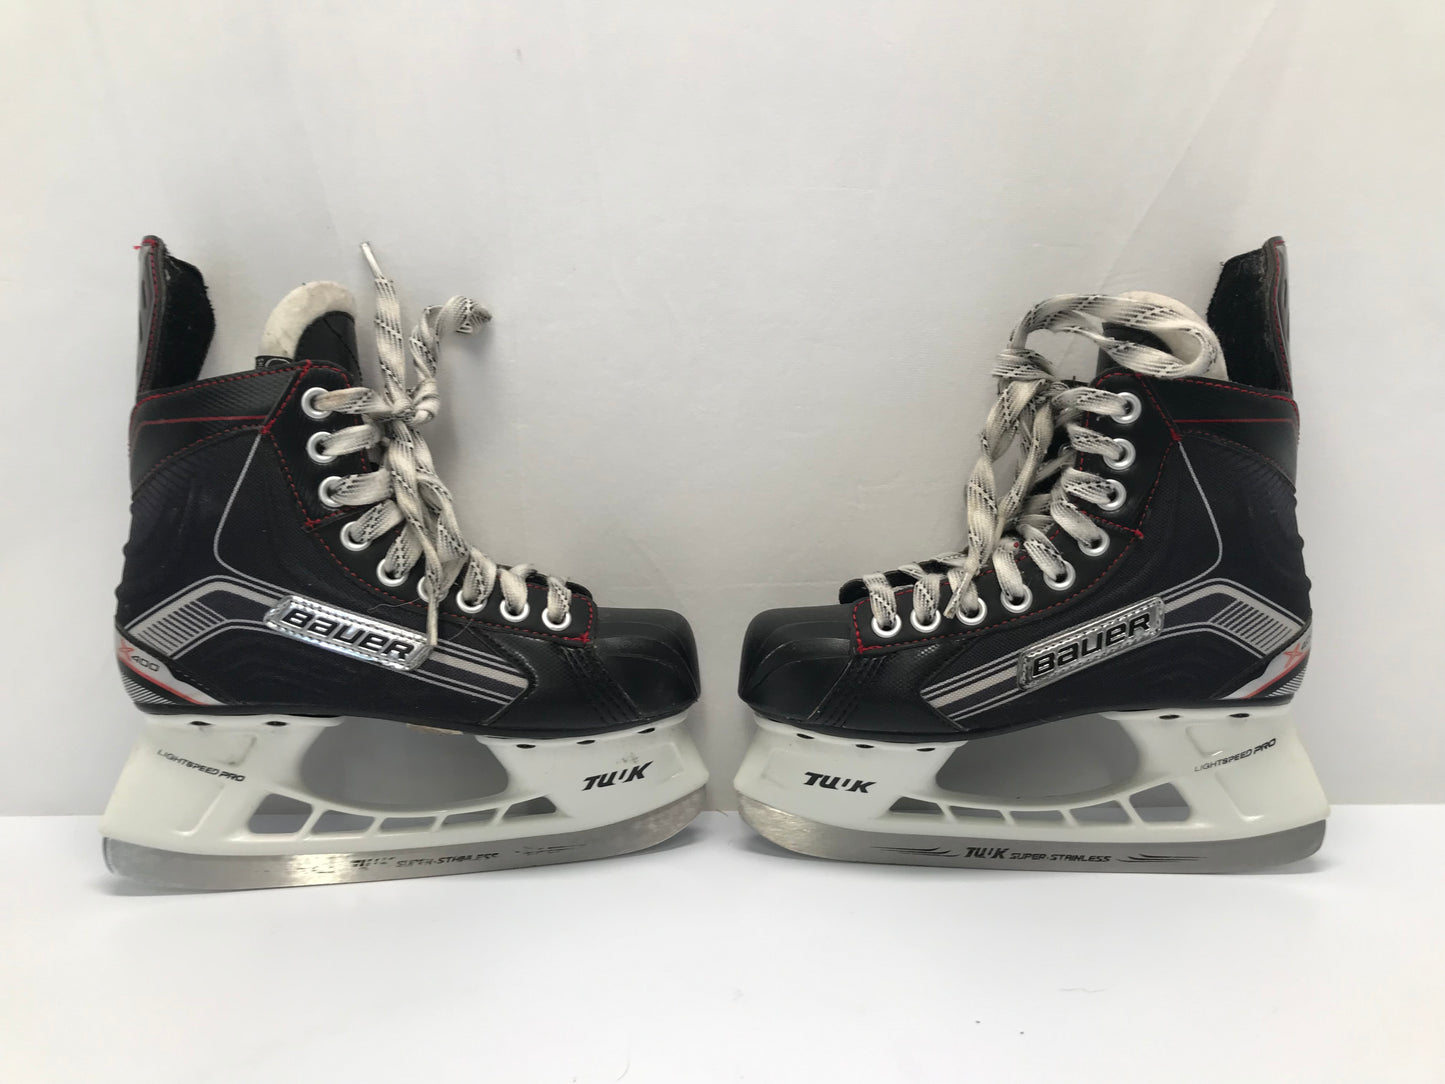 Hockey Skates Child Size 3 Shoe Size Bauer Vapor X400 Excellent